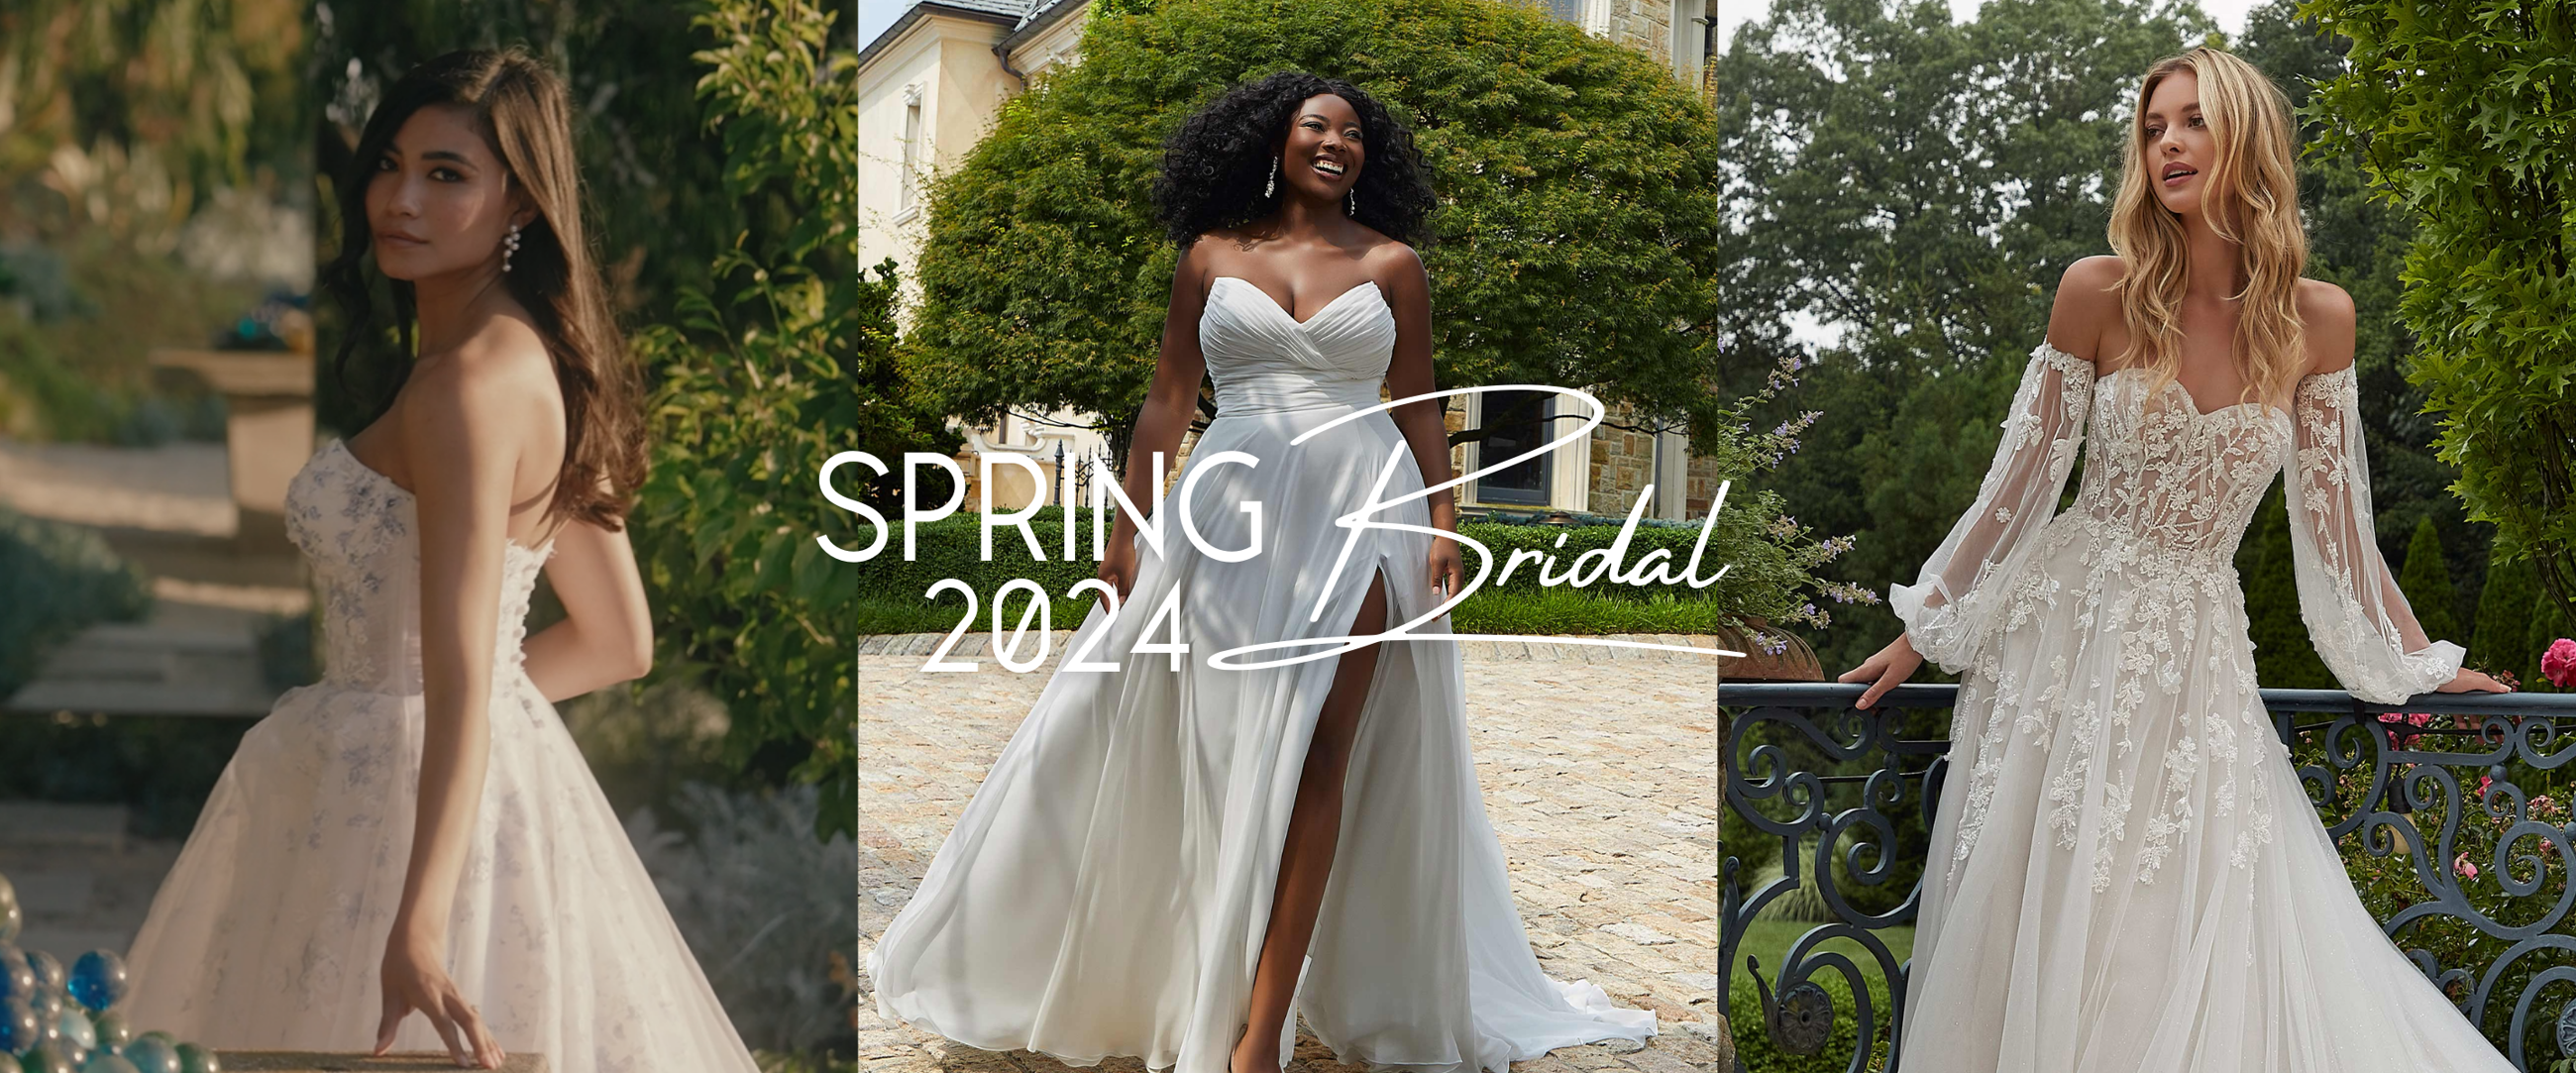 Spring 2024 Bridal banner desktop